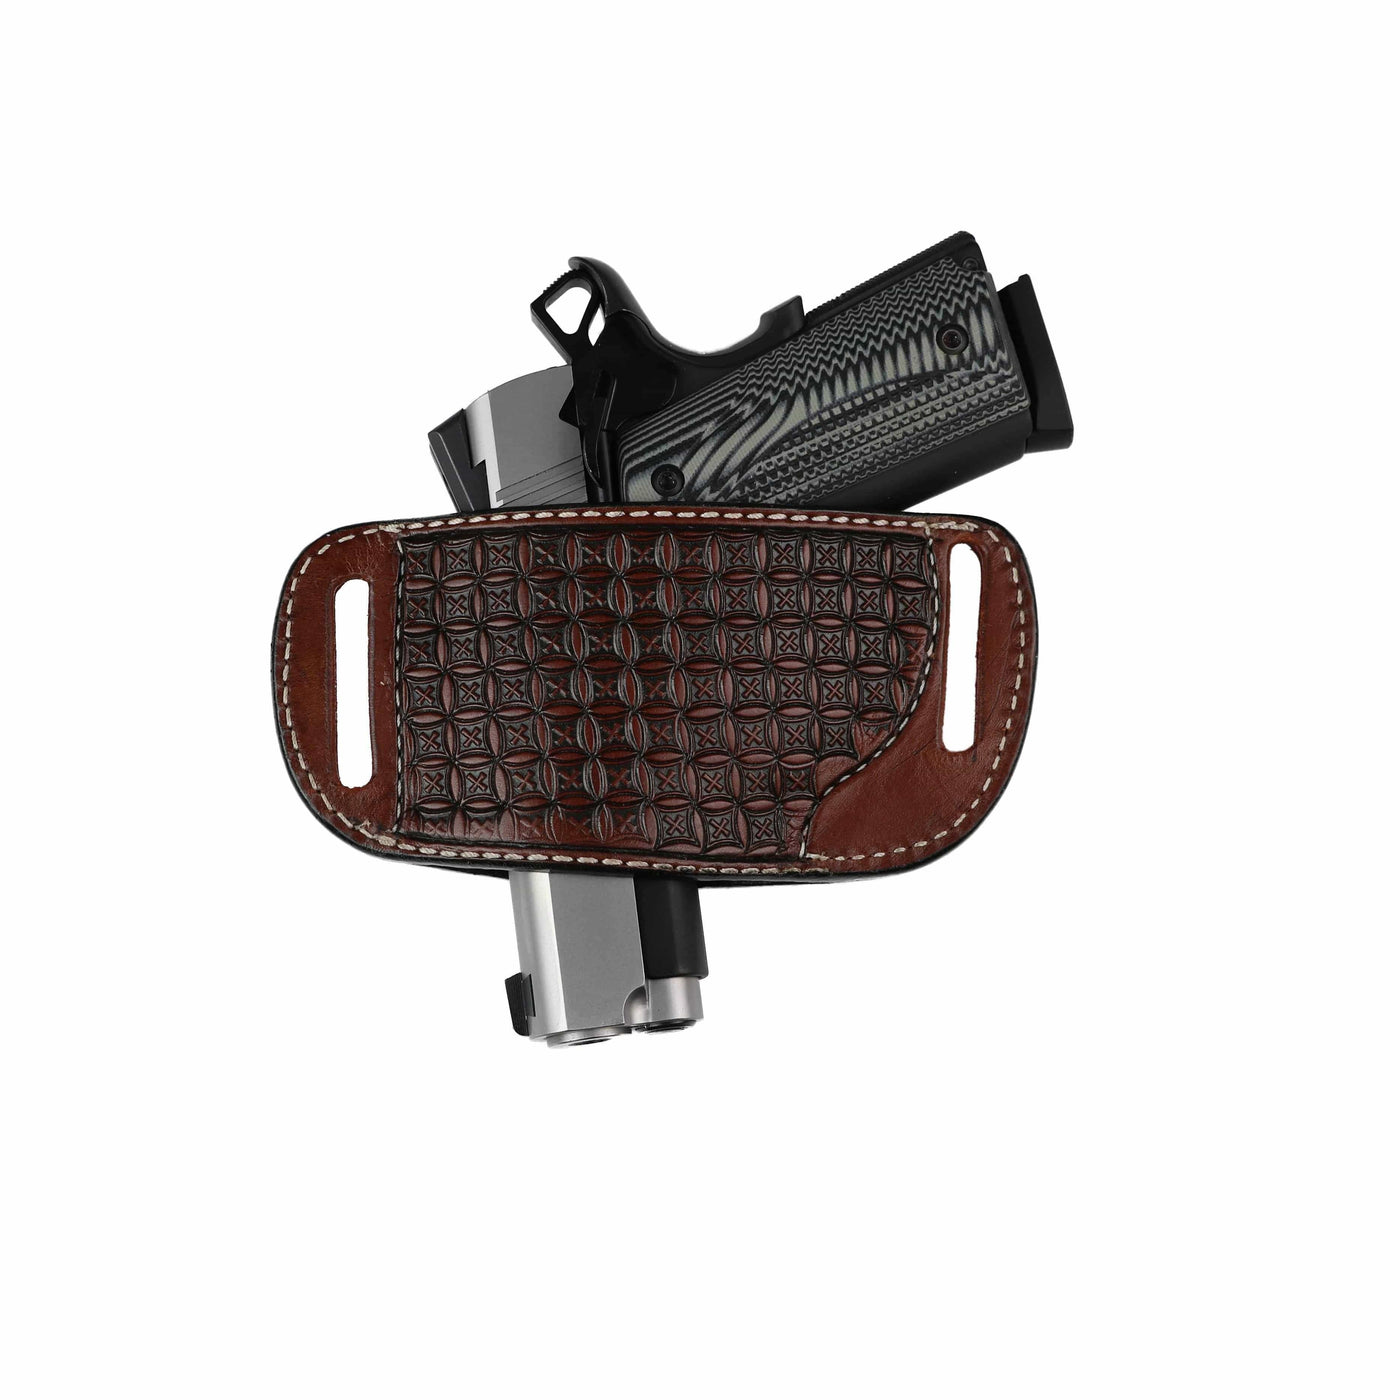 High Caliber Gun compact leather belt holster case (Brown)